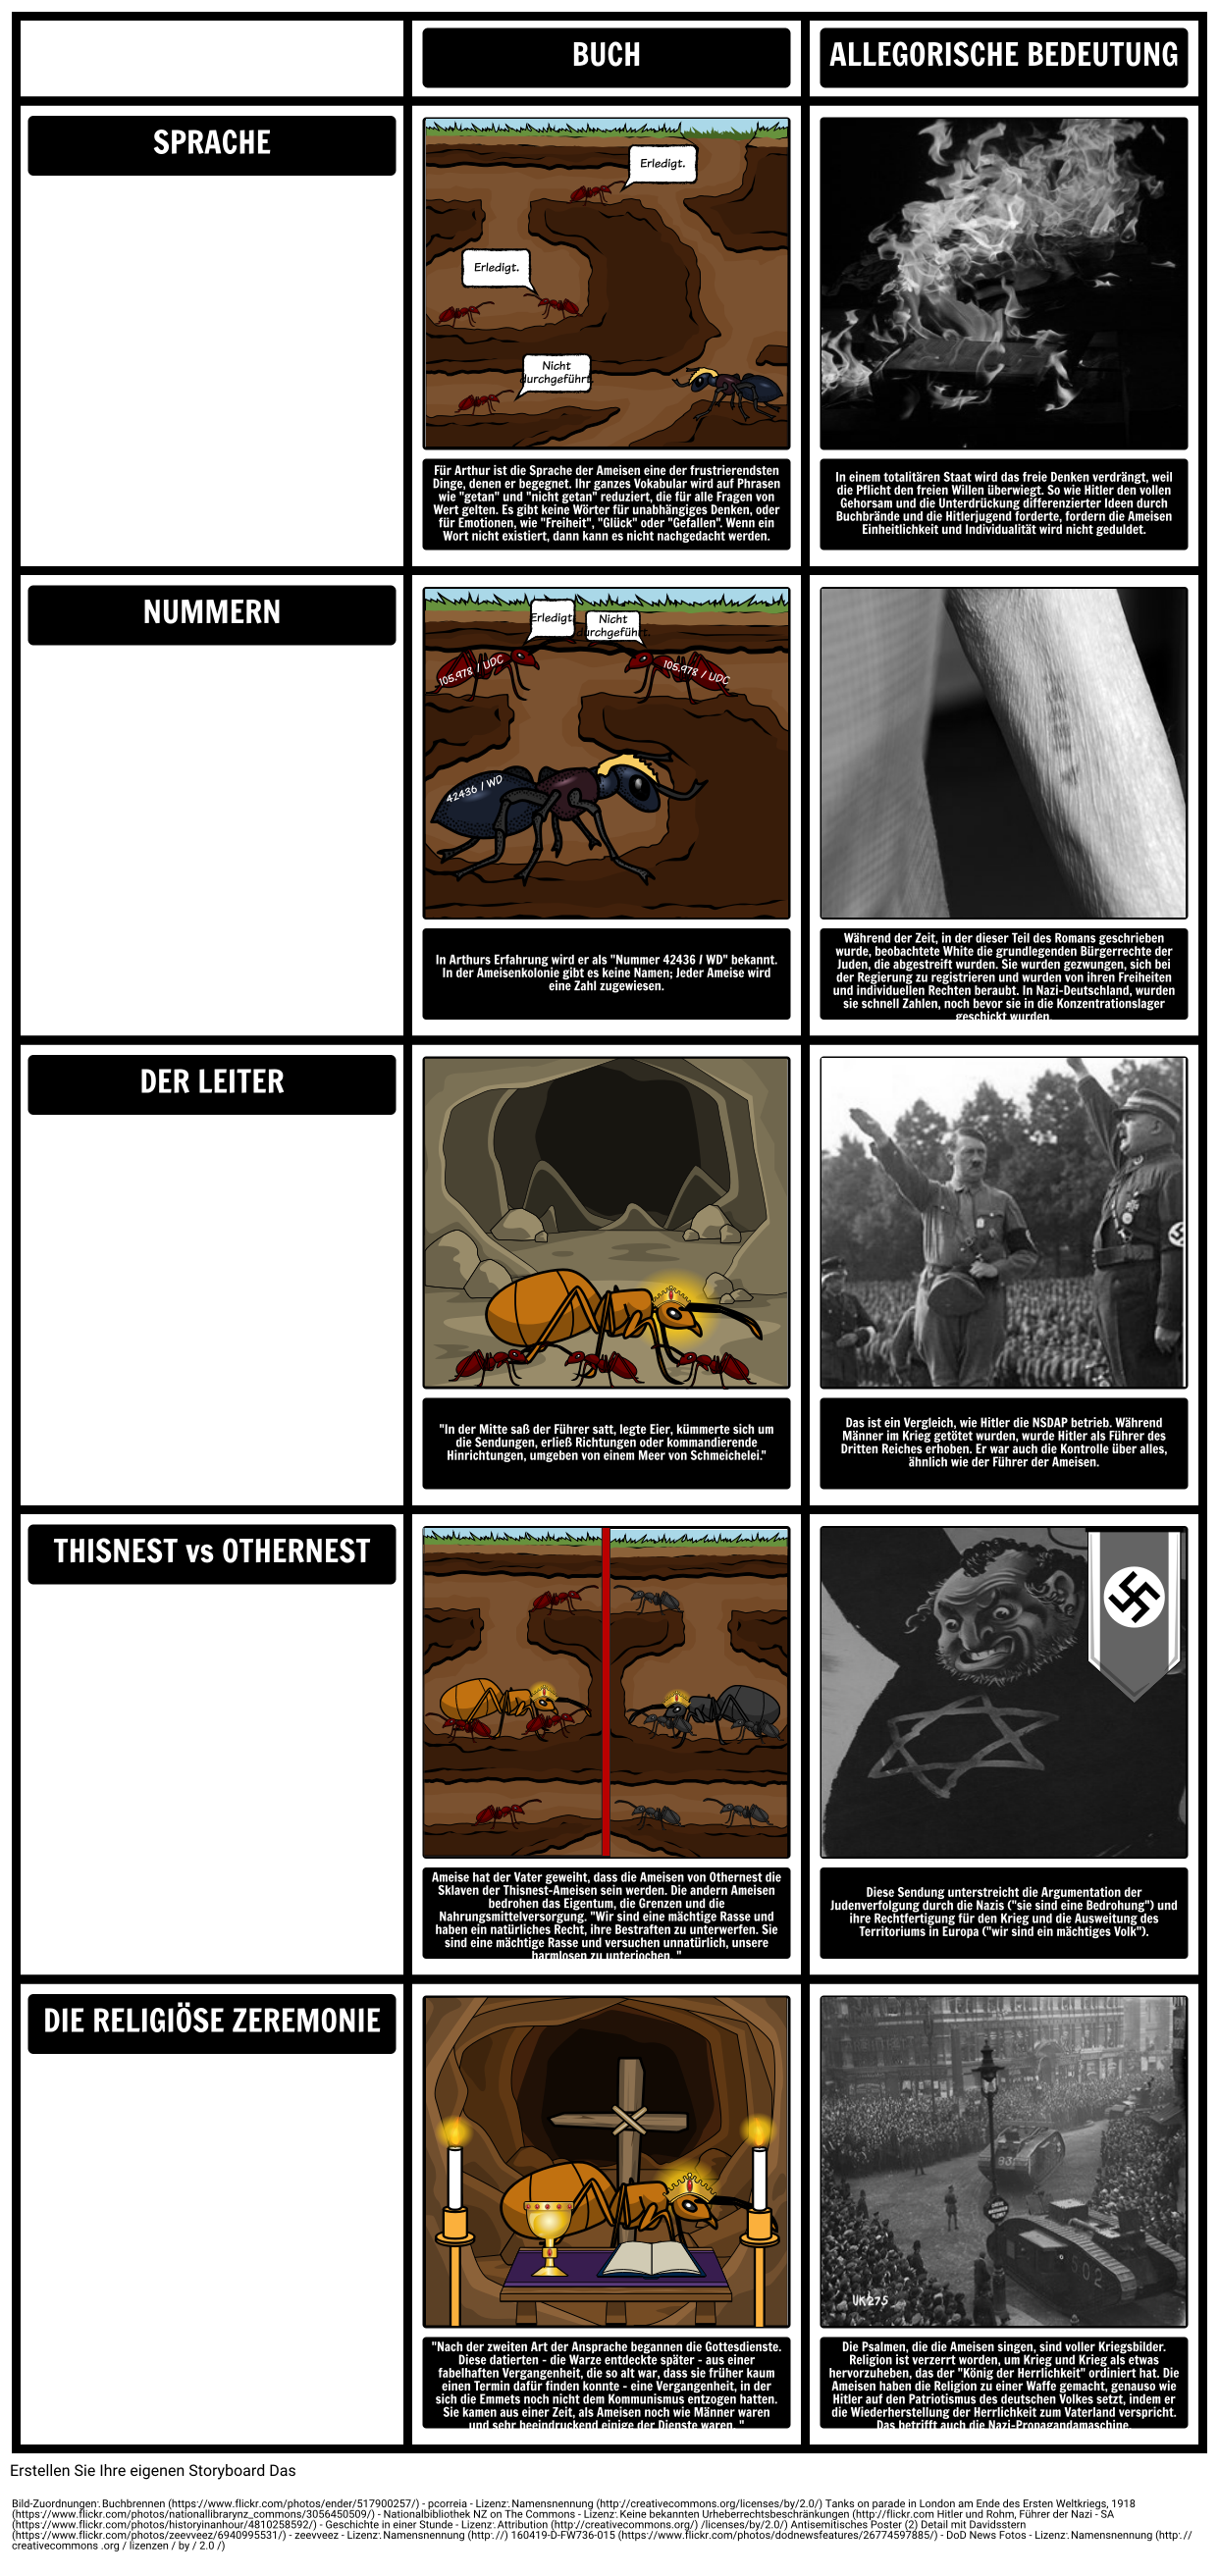 TOAFK - Allegorie in der Lektion der Ameisen in "Das Schwert im Stein"